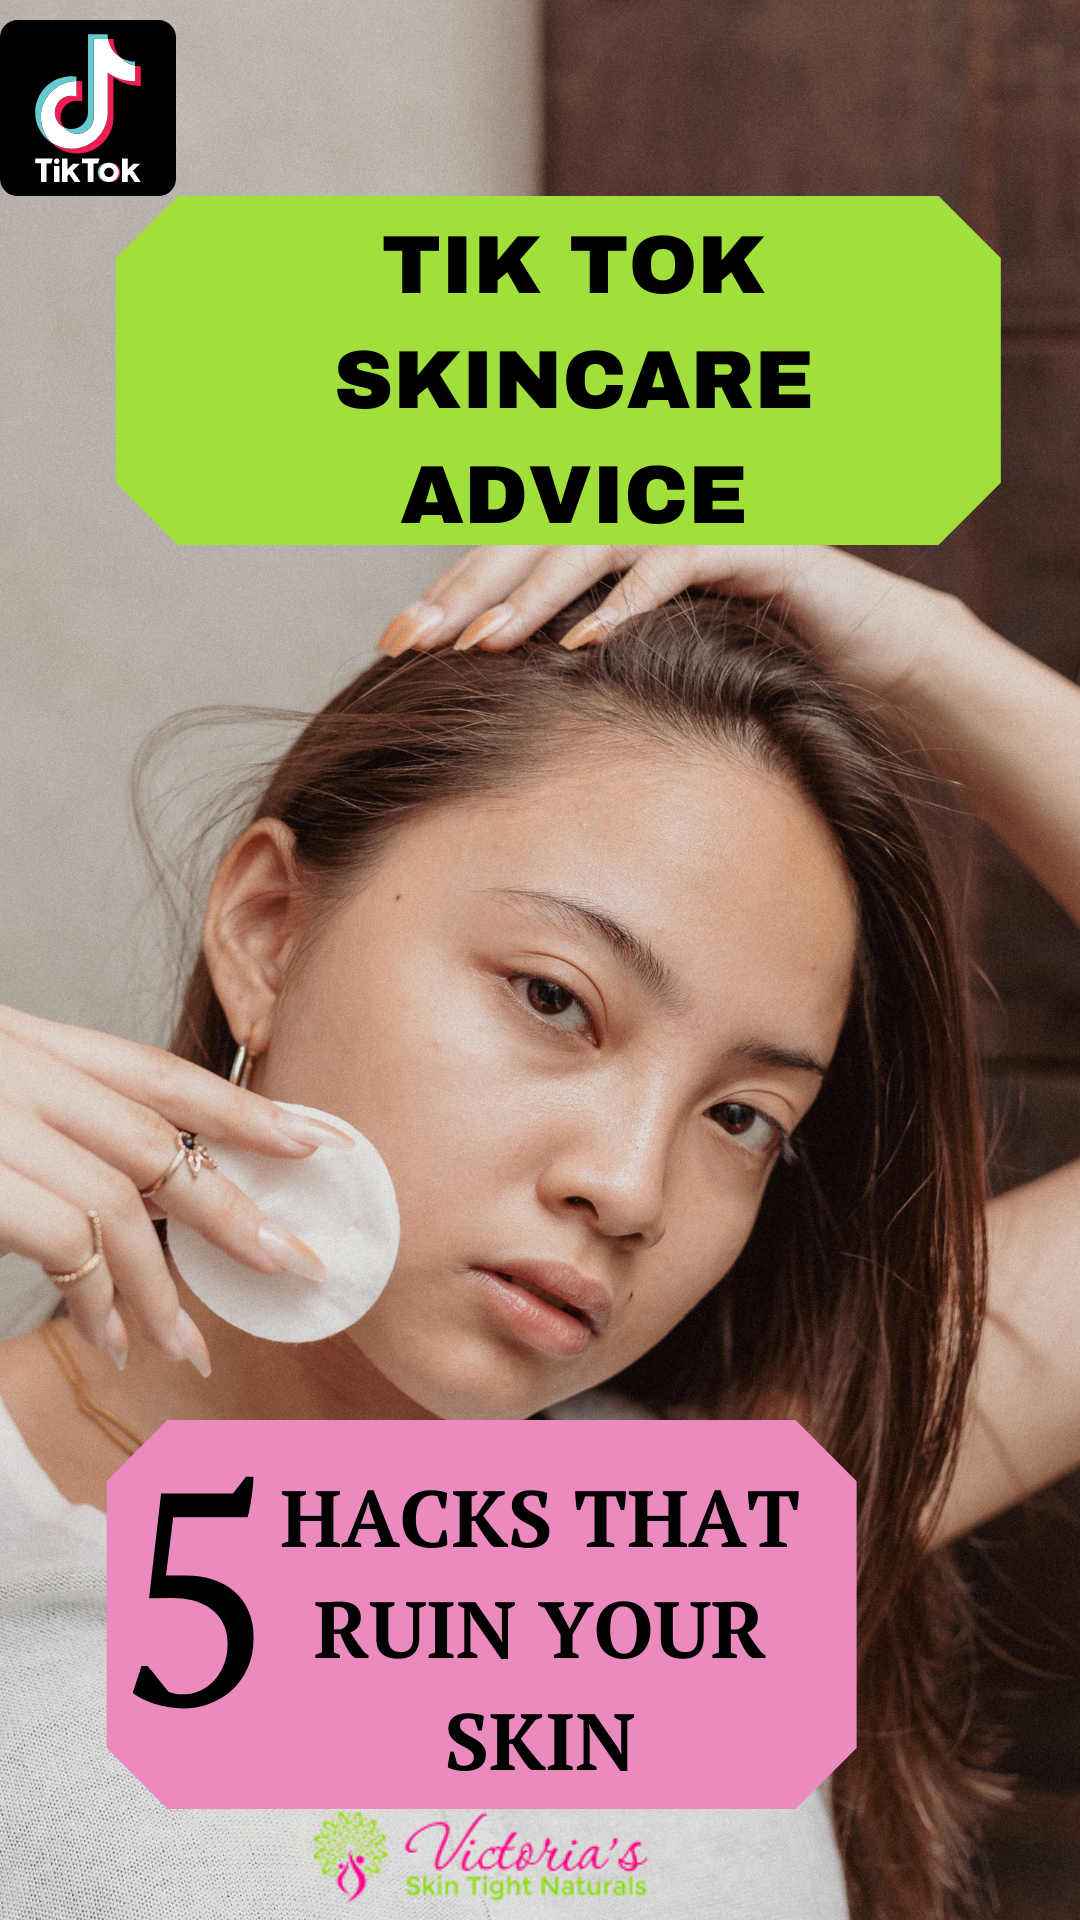 Tik Tok Skincare Advice